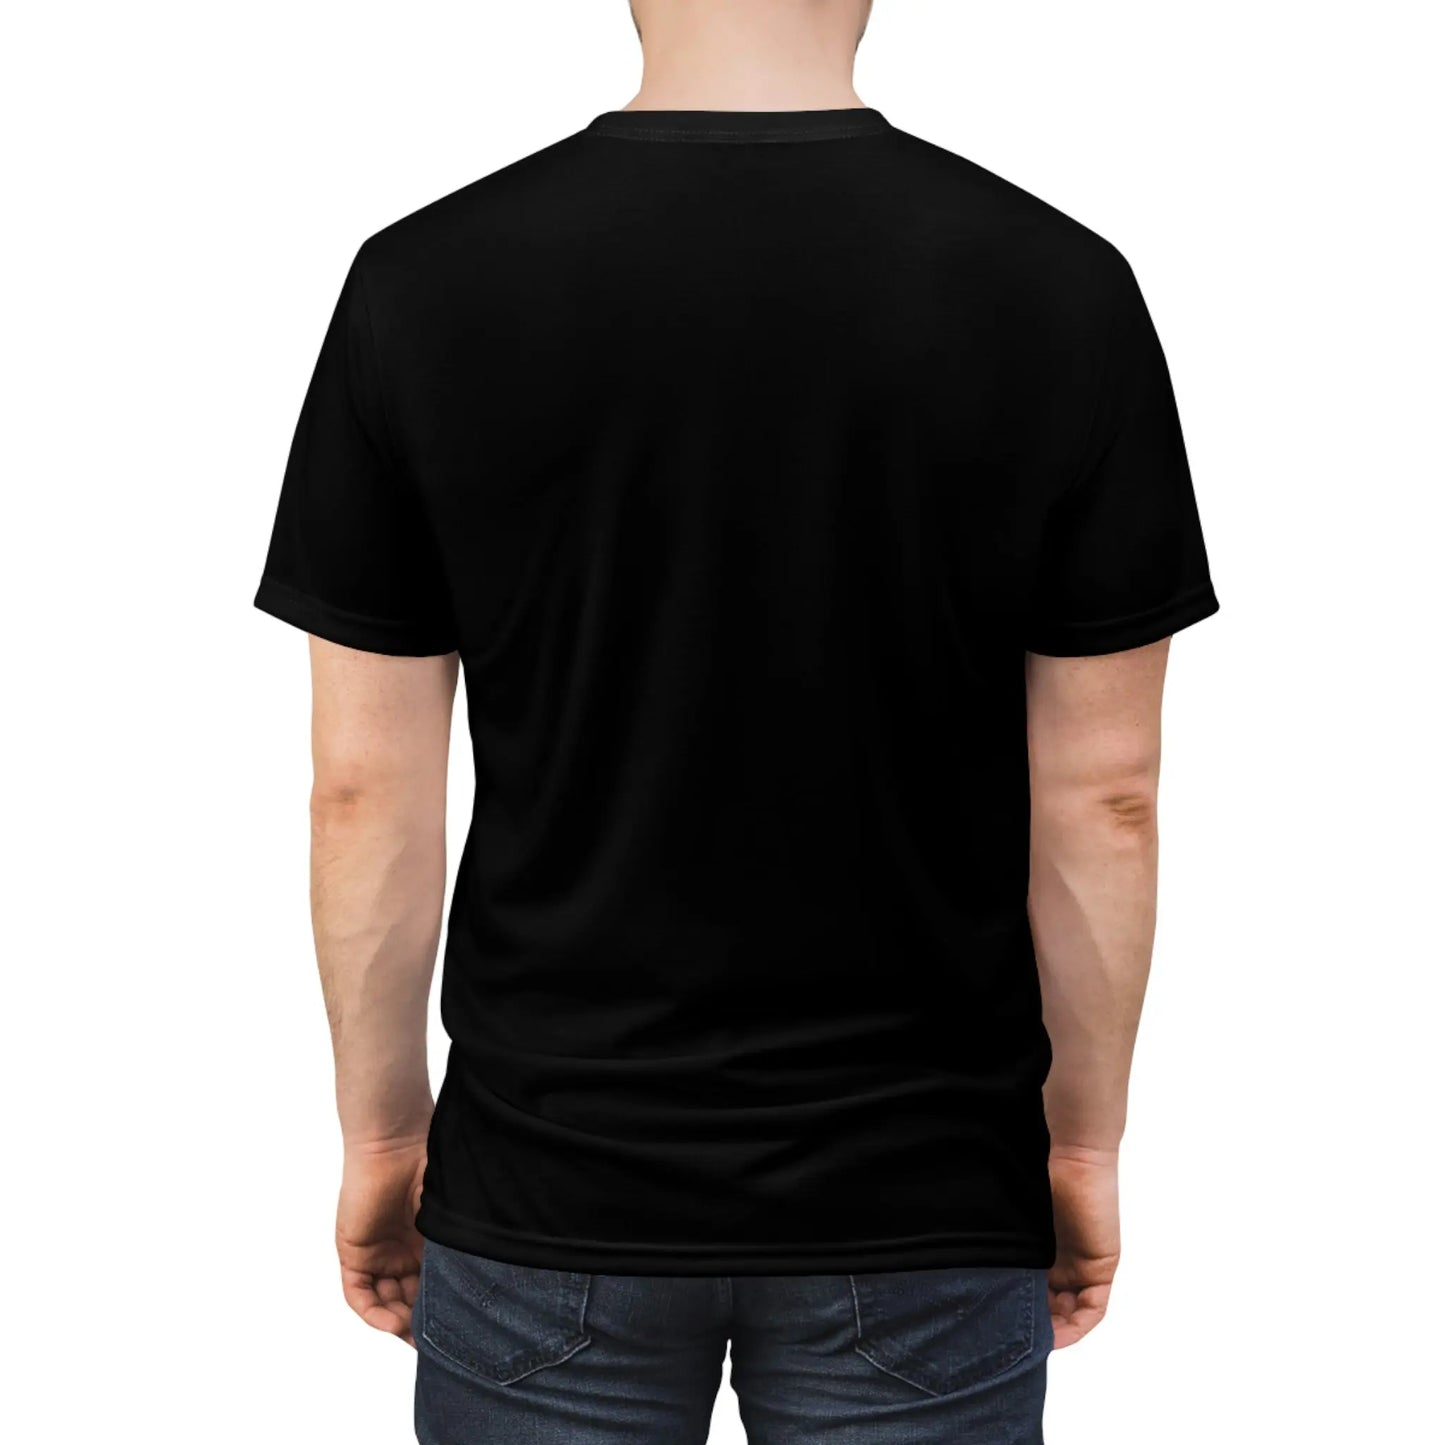 Primitive T-shirt Unisex Cut & Sew - Official primitive store